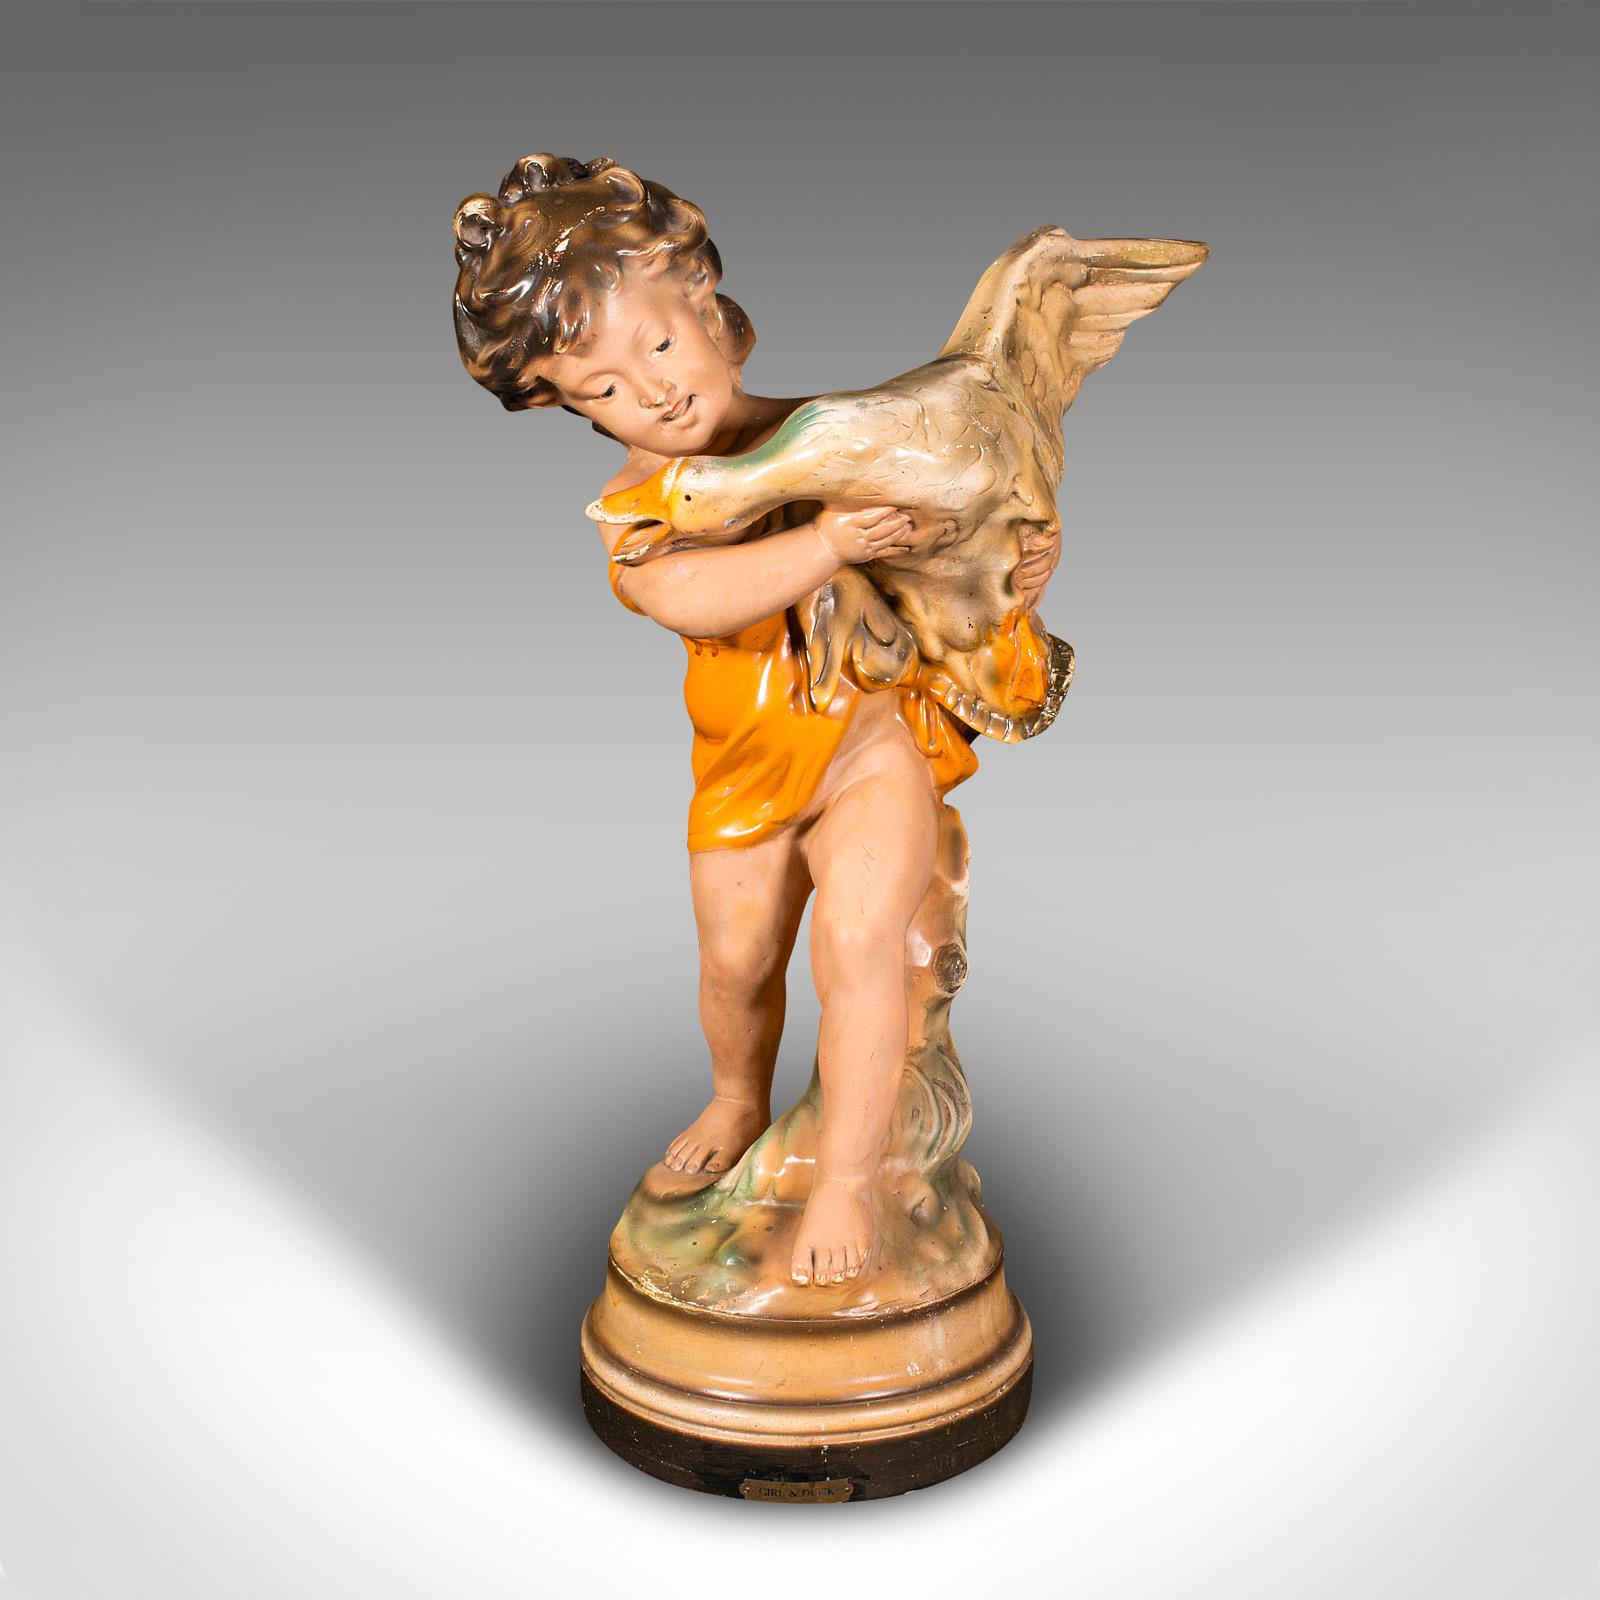 Il s'agit d'une grande figurine d'exposition vintage. Fille décorative anglaise en plâtre avec un ornement en forme de canard, datant de la période Art déco, vers 1930.

Un moment chaotique, où le canard indiscipliné se débat dans les bras de la